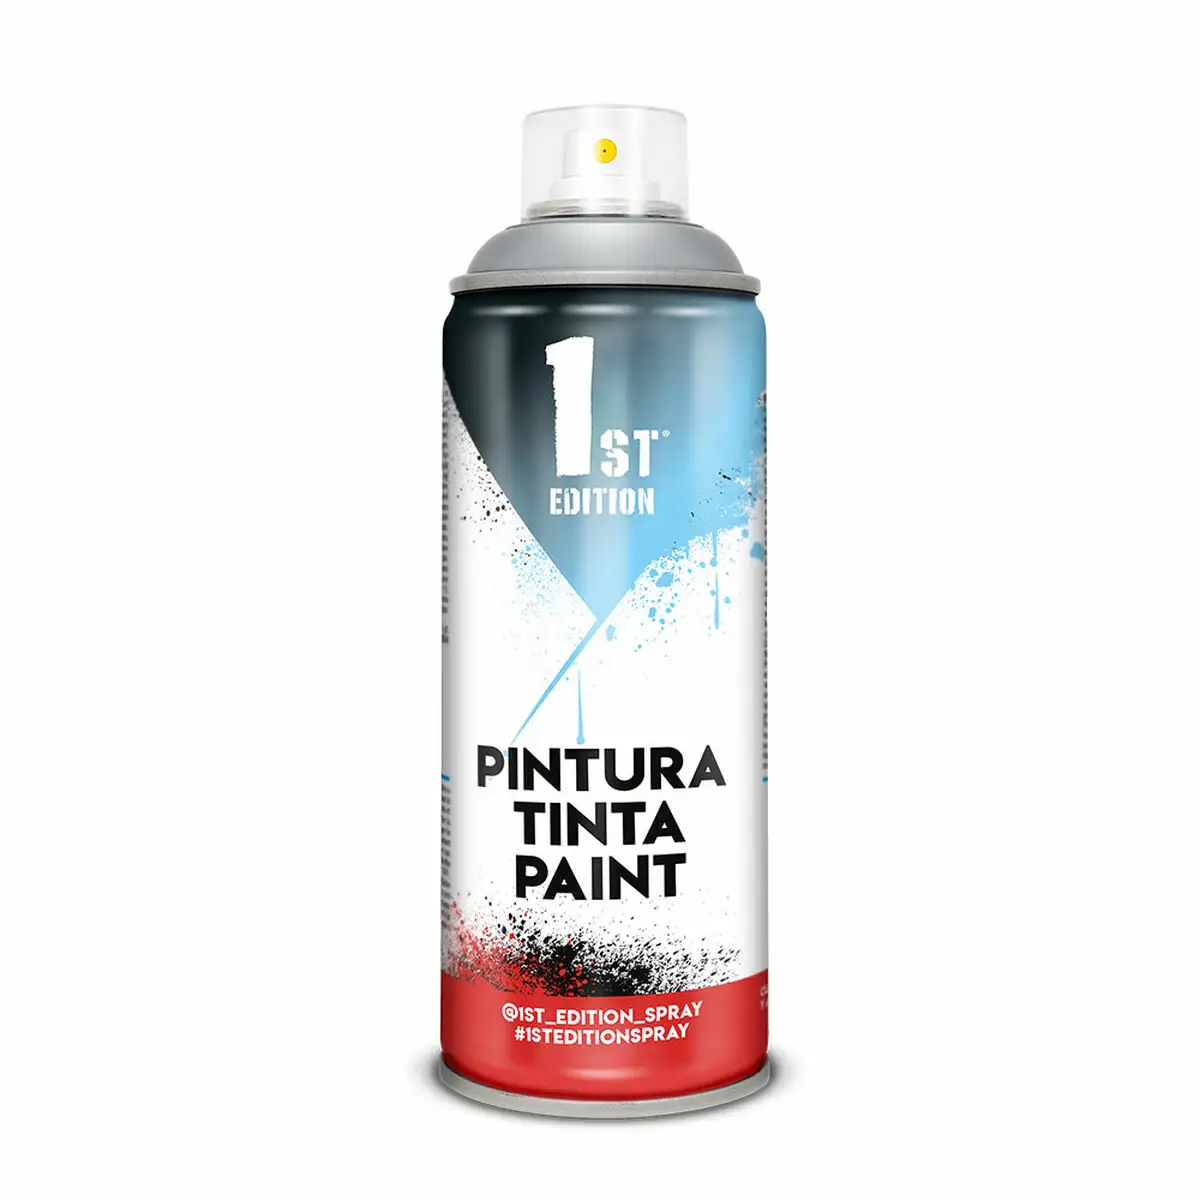 Peinture en spray 1st edition 658 cement grey 300 ml_3010. DIAYTAR SENEGAL - L'Art de Vivre avec Authenticité. Explorez notre gamme de produits artisanaux et découvrez des articles qui apportent une touche unique à votre vie.